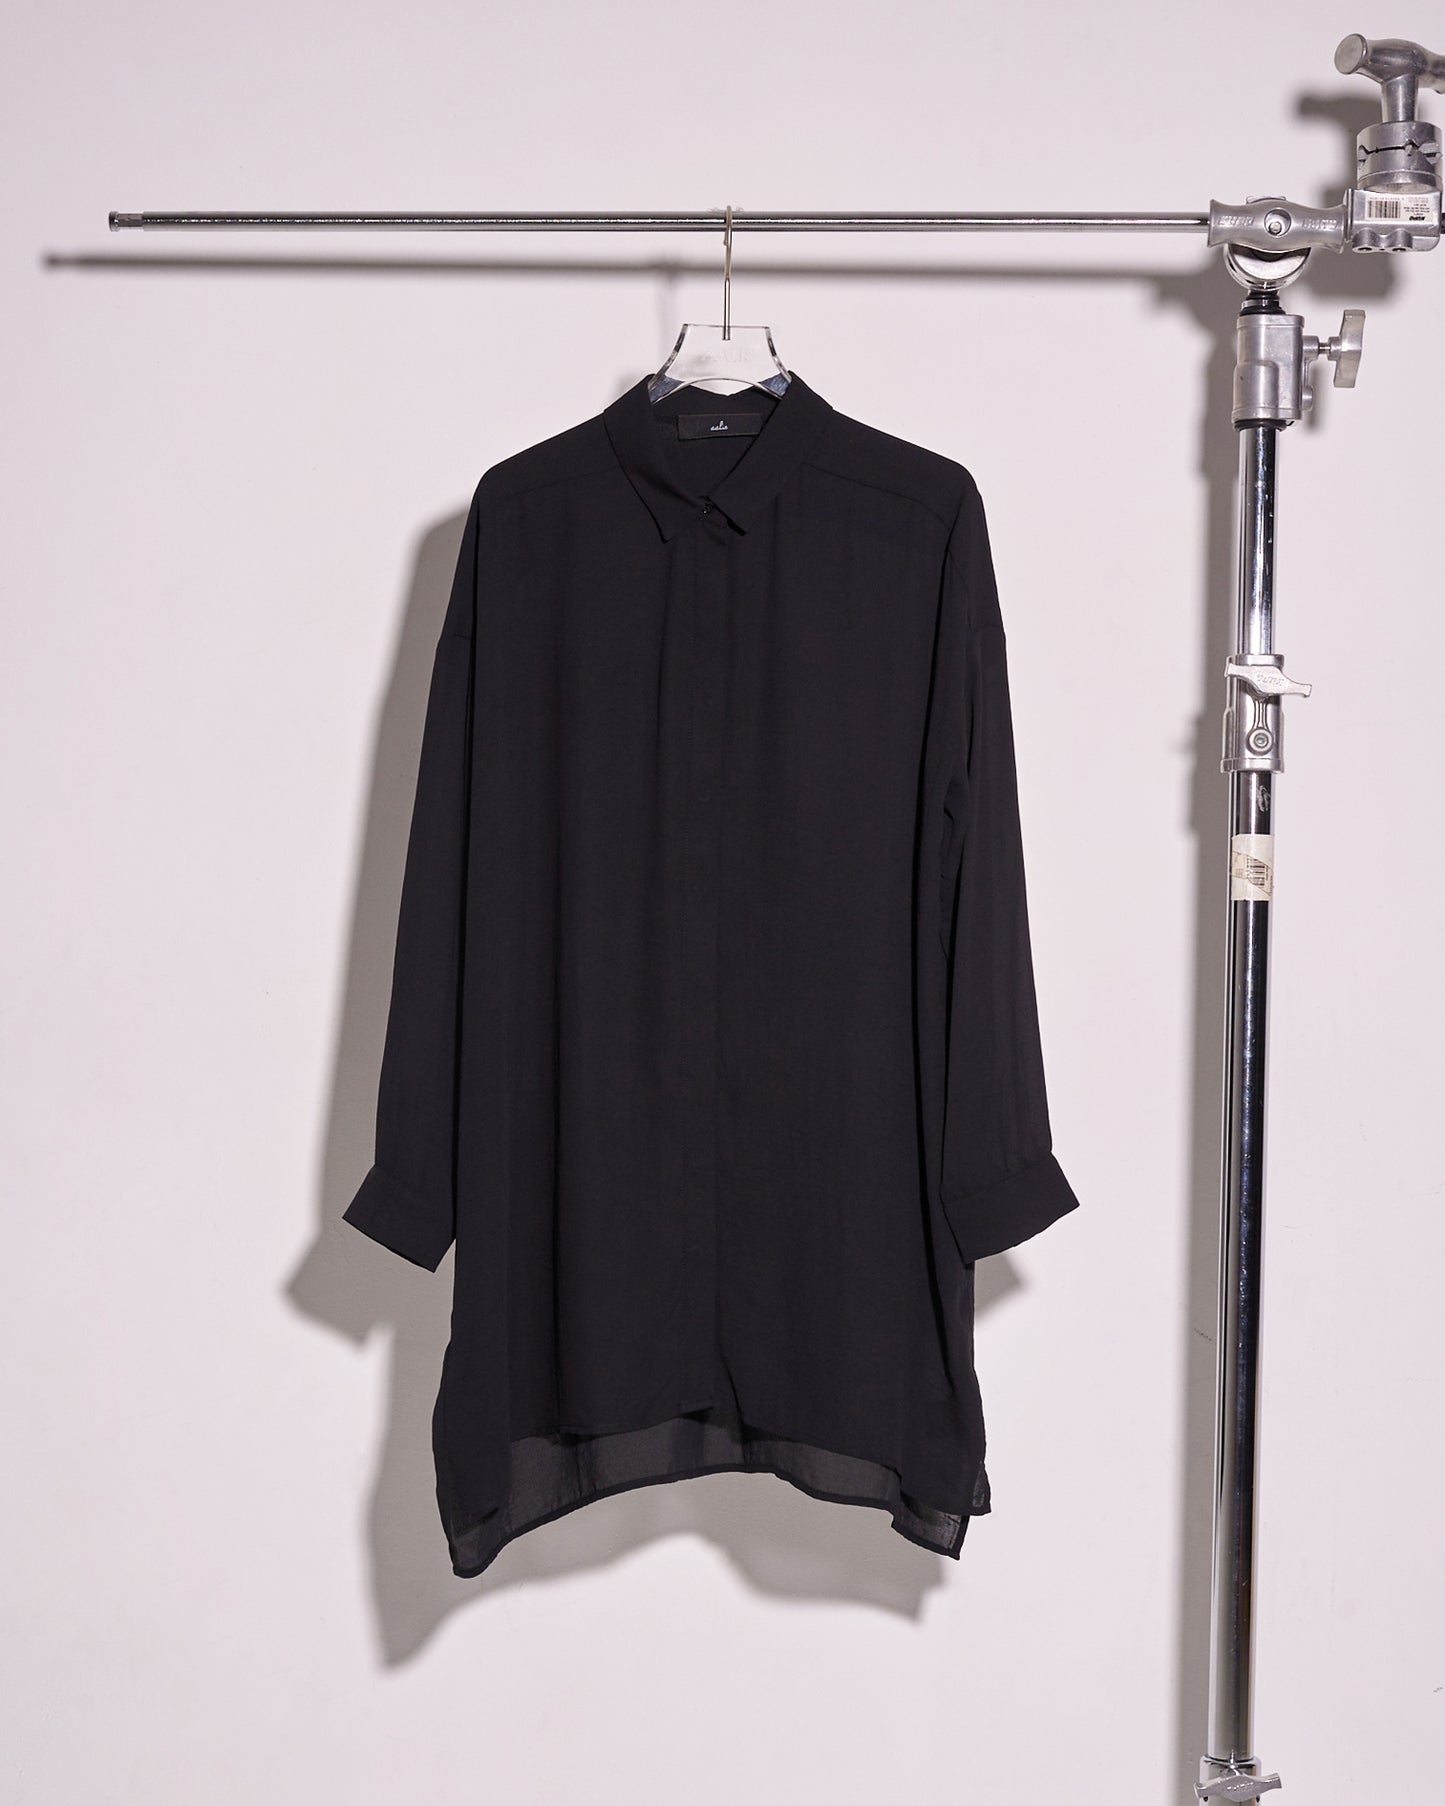 aalis DIARA oversized shirt (Black)